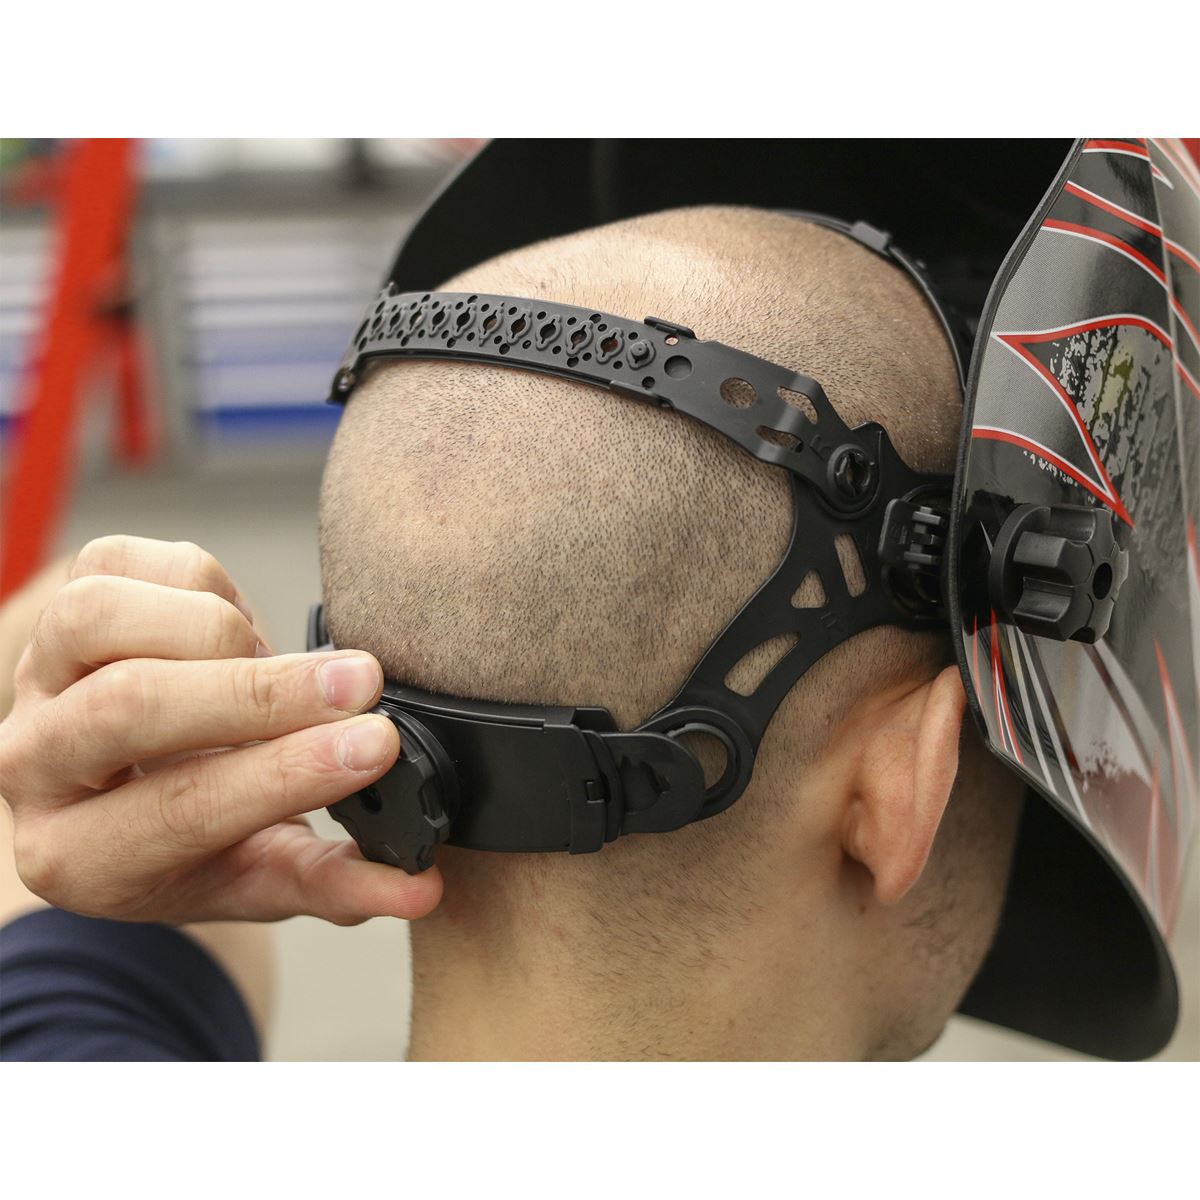 Sealey Welding Helmet Auto Darkening - Shade 9-13